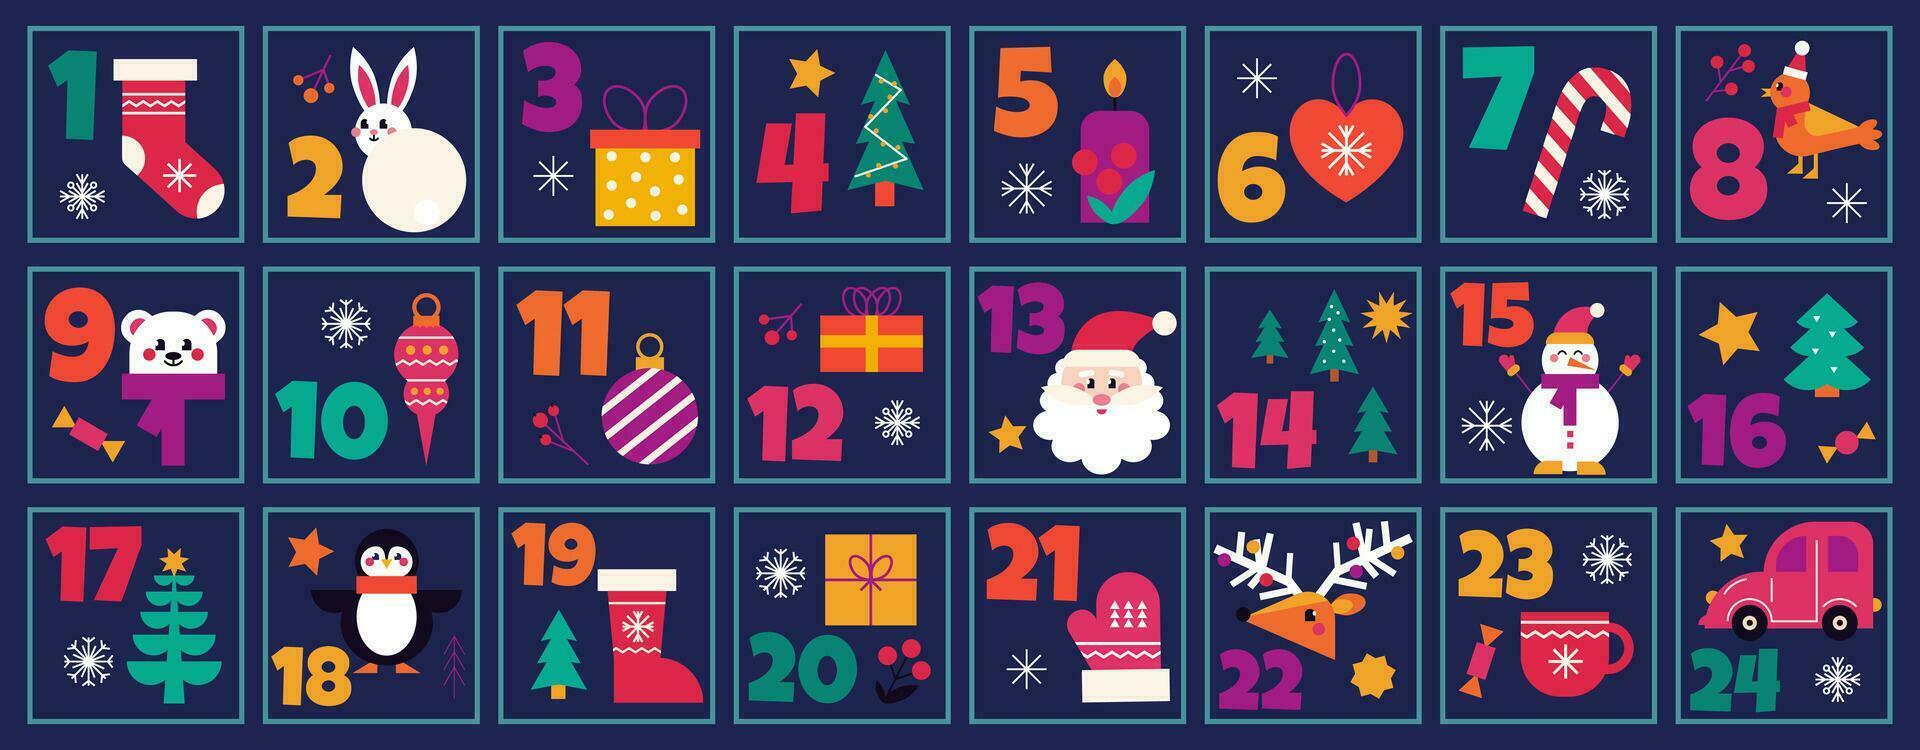 Natale Avvento calendario conto alla rovescia stampabile numerato manifesto con natale elementi e simboli, vettore illustrazione